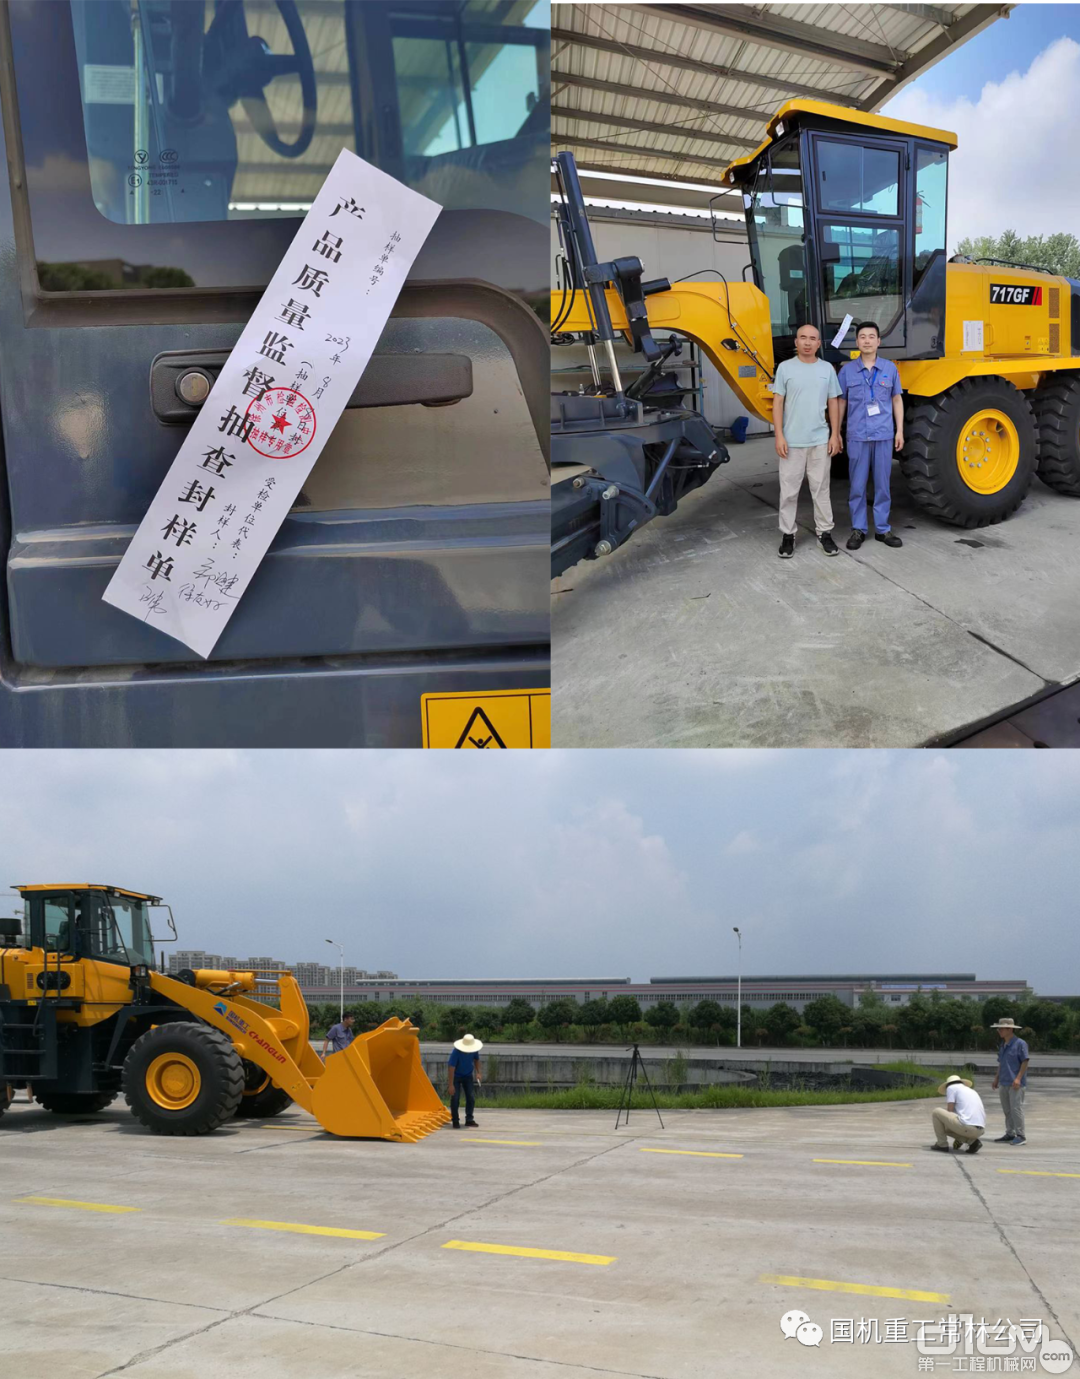 江苏省工程机械产品质量监督检验中心对国机重工集团常林有限公司的产品进行了质量合格率抽样检测